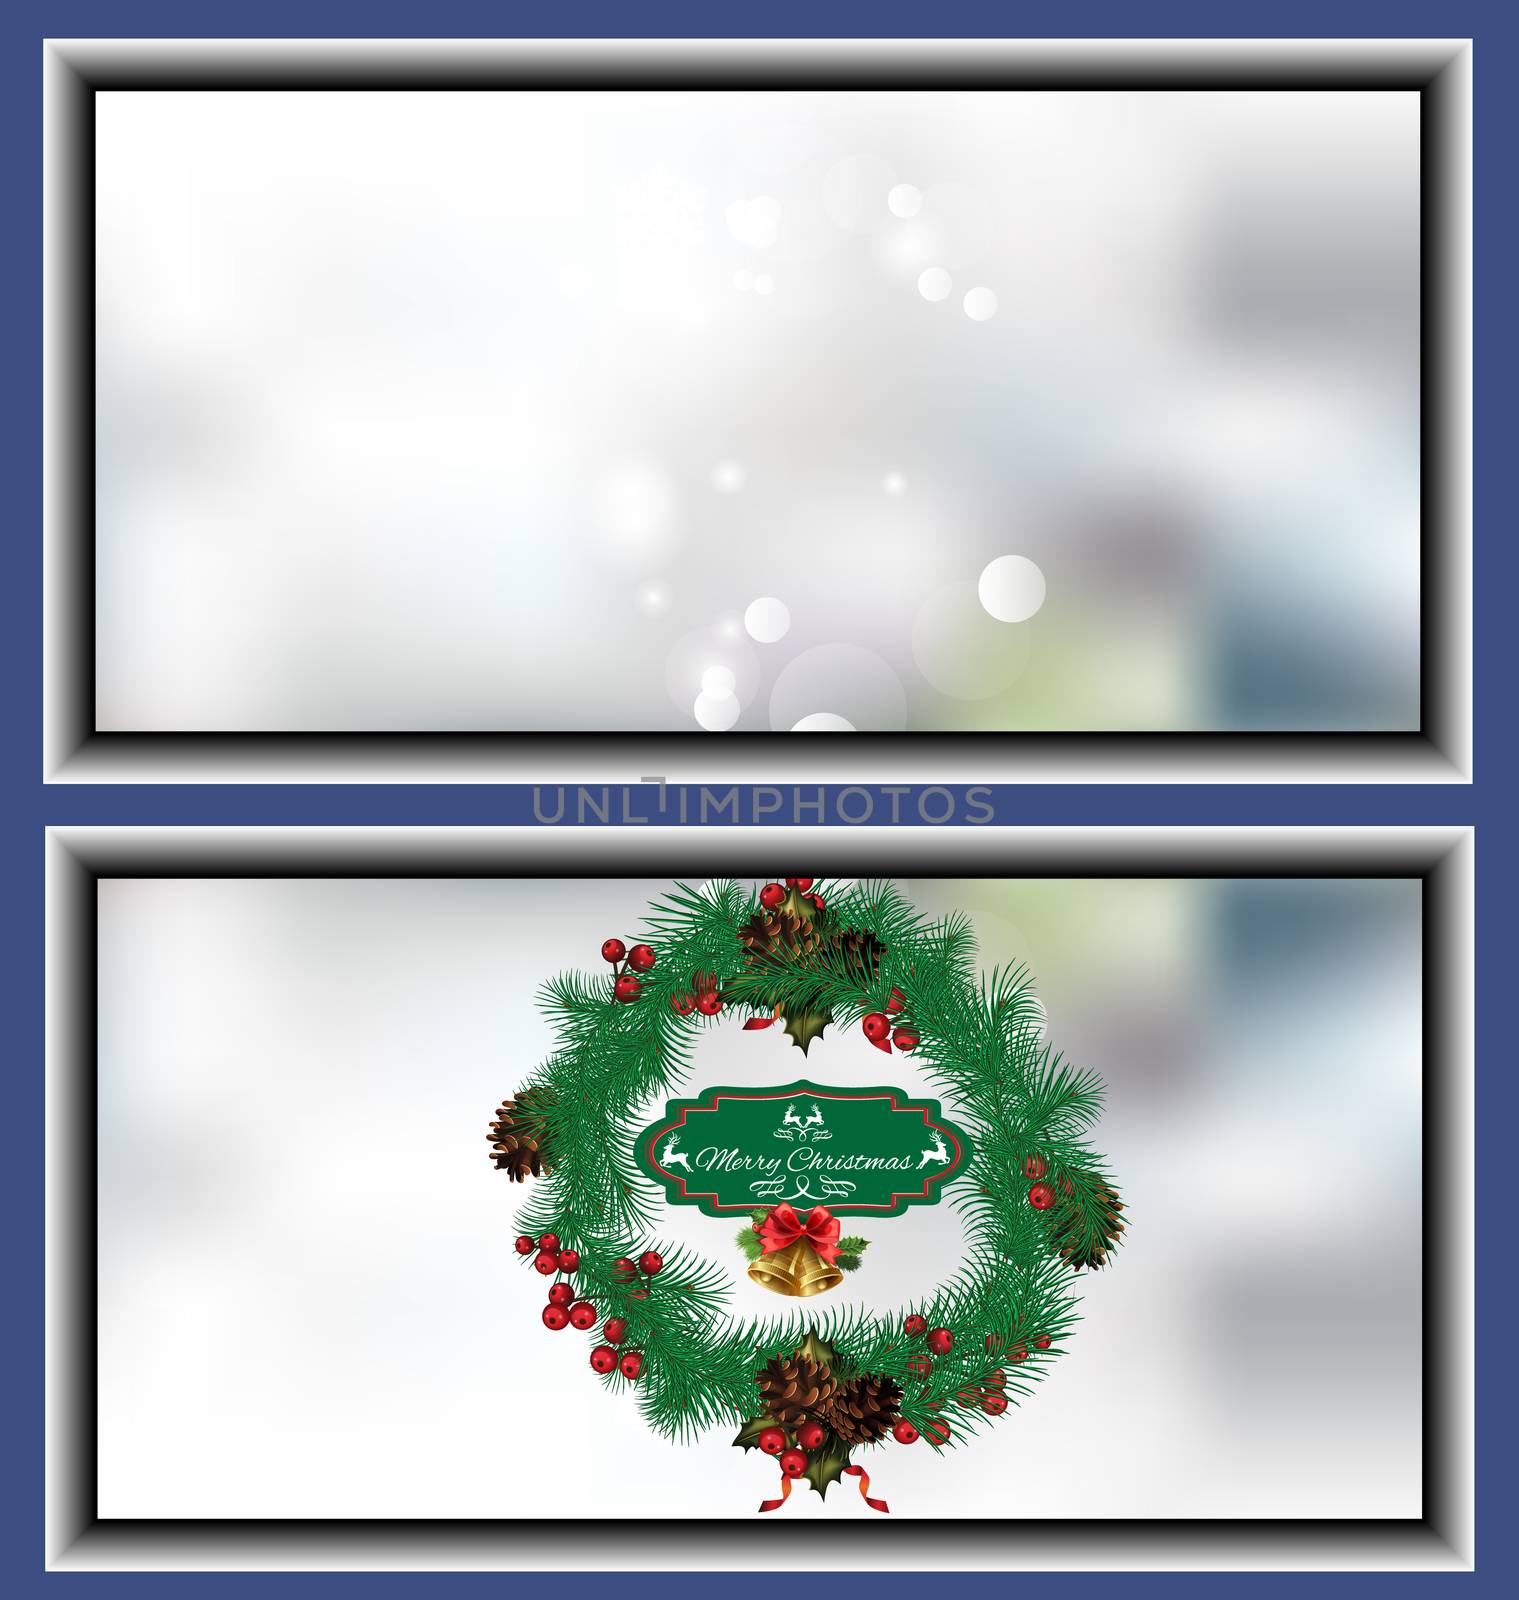 Christmas wreath card